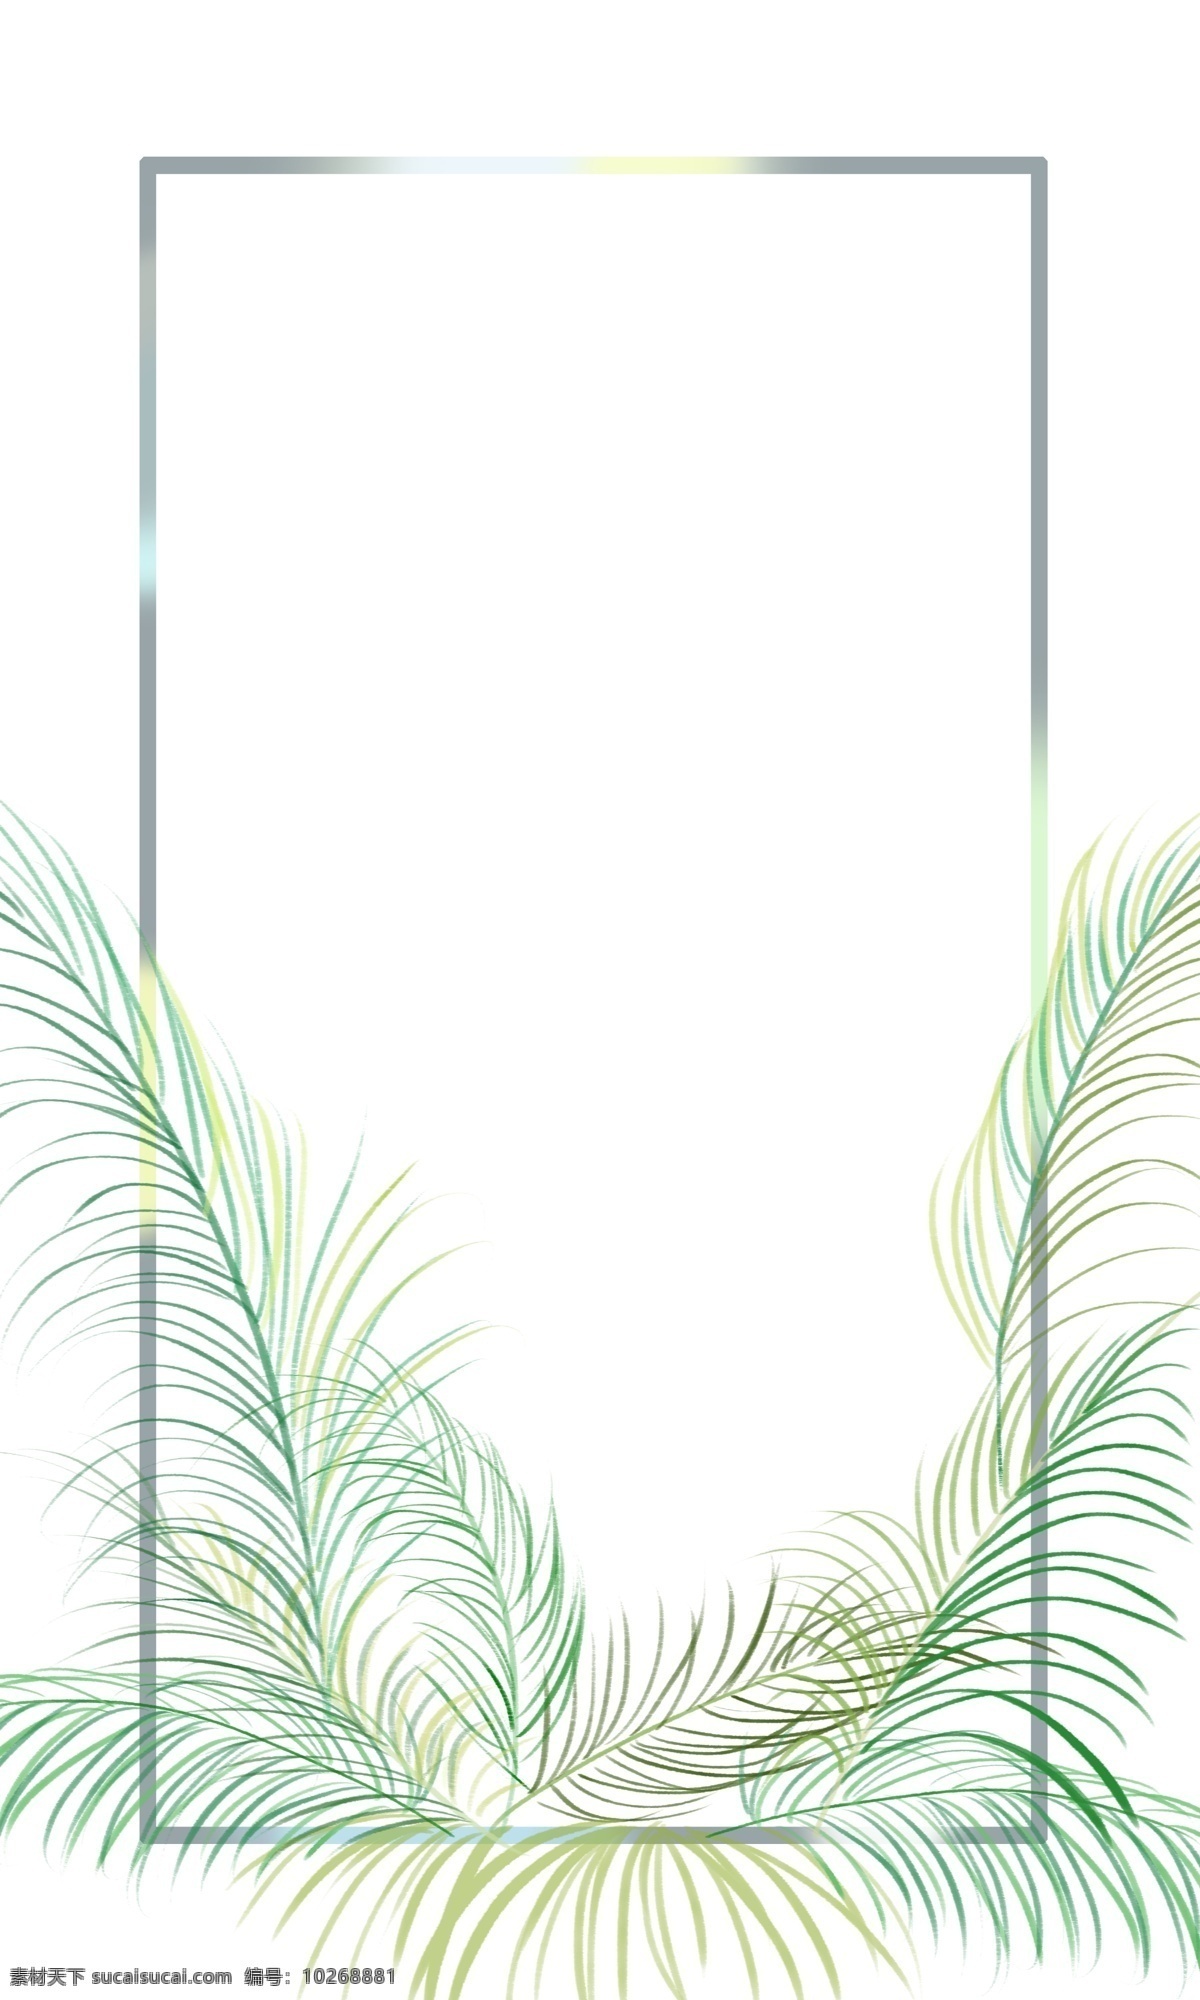 棕榈树 边框 背景 免 扣 夏威夷 风格 可自行组合 绿色浪漫 海报背景